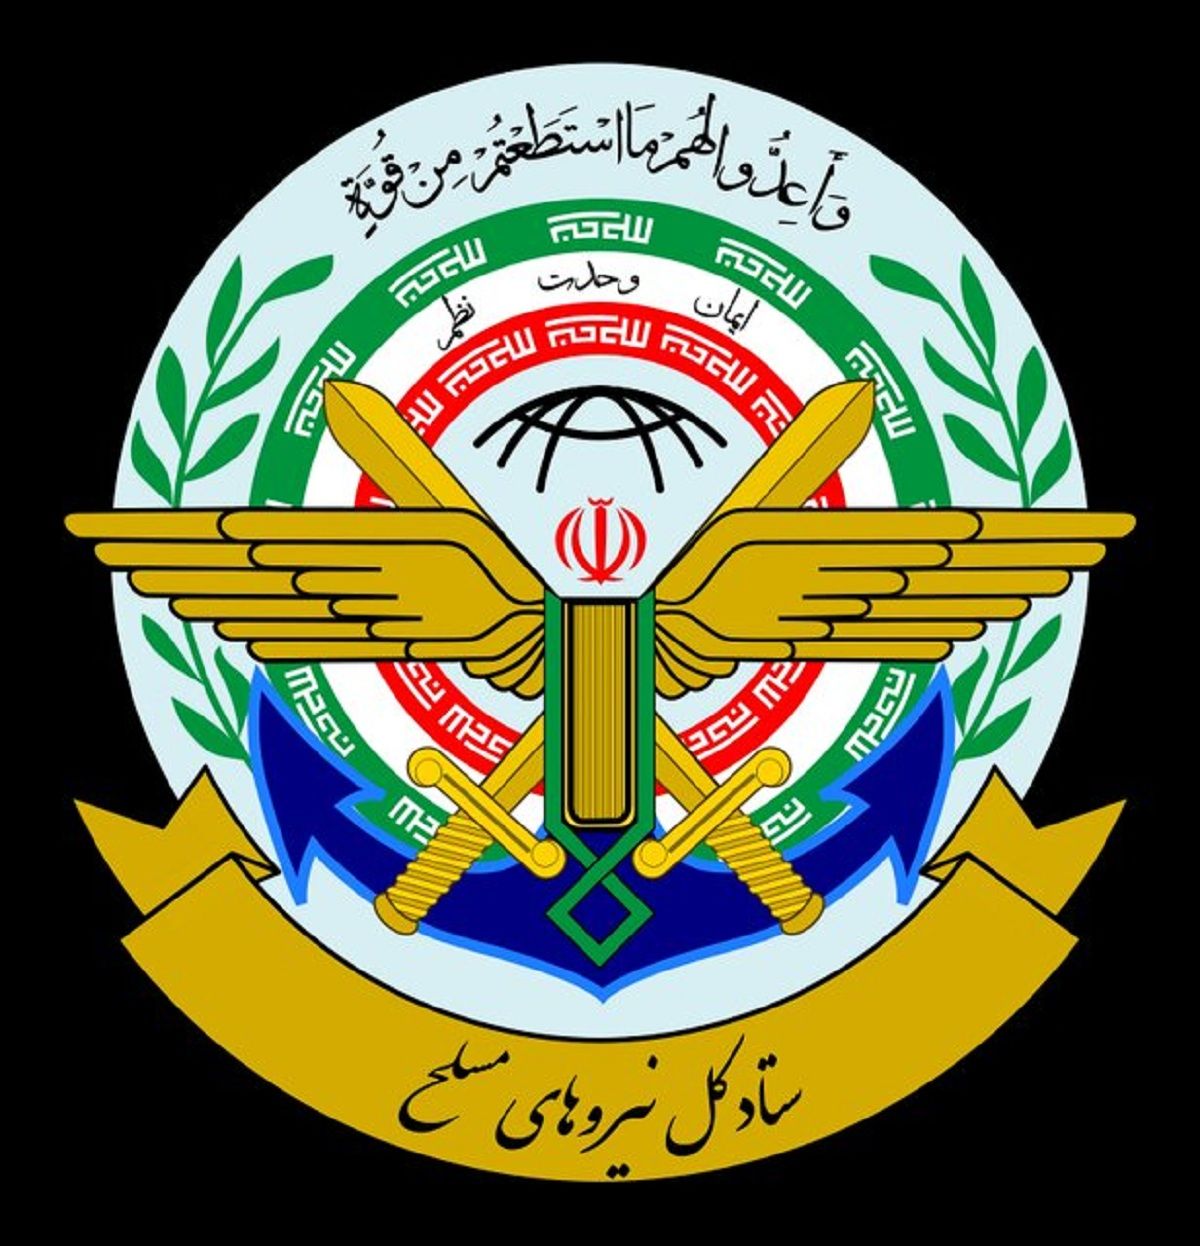 بیانیه ستاد کل نیروهای مسلح به مناسبت 14 و 15 خرداد